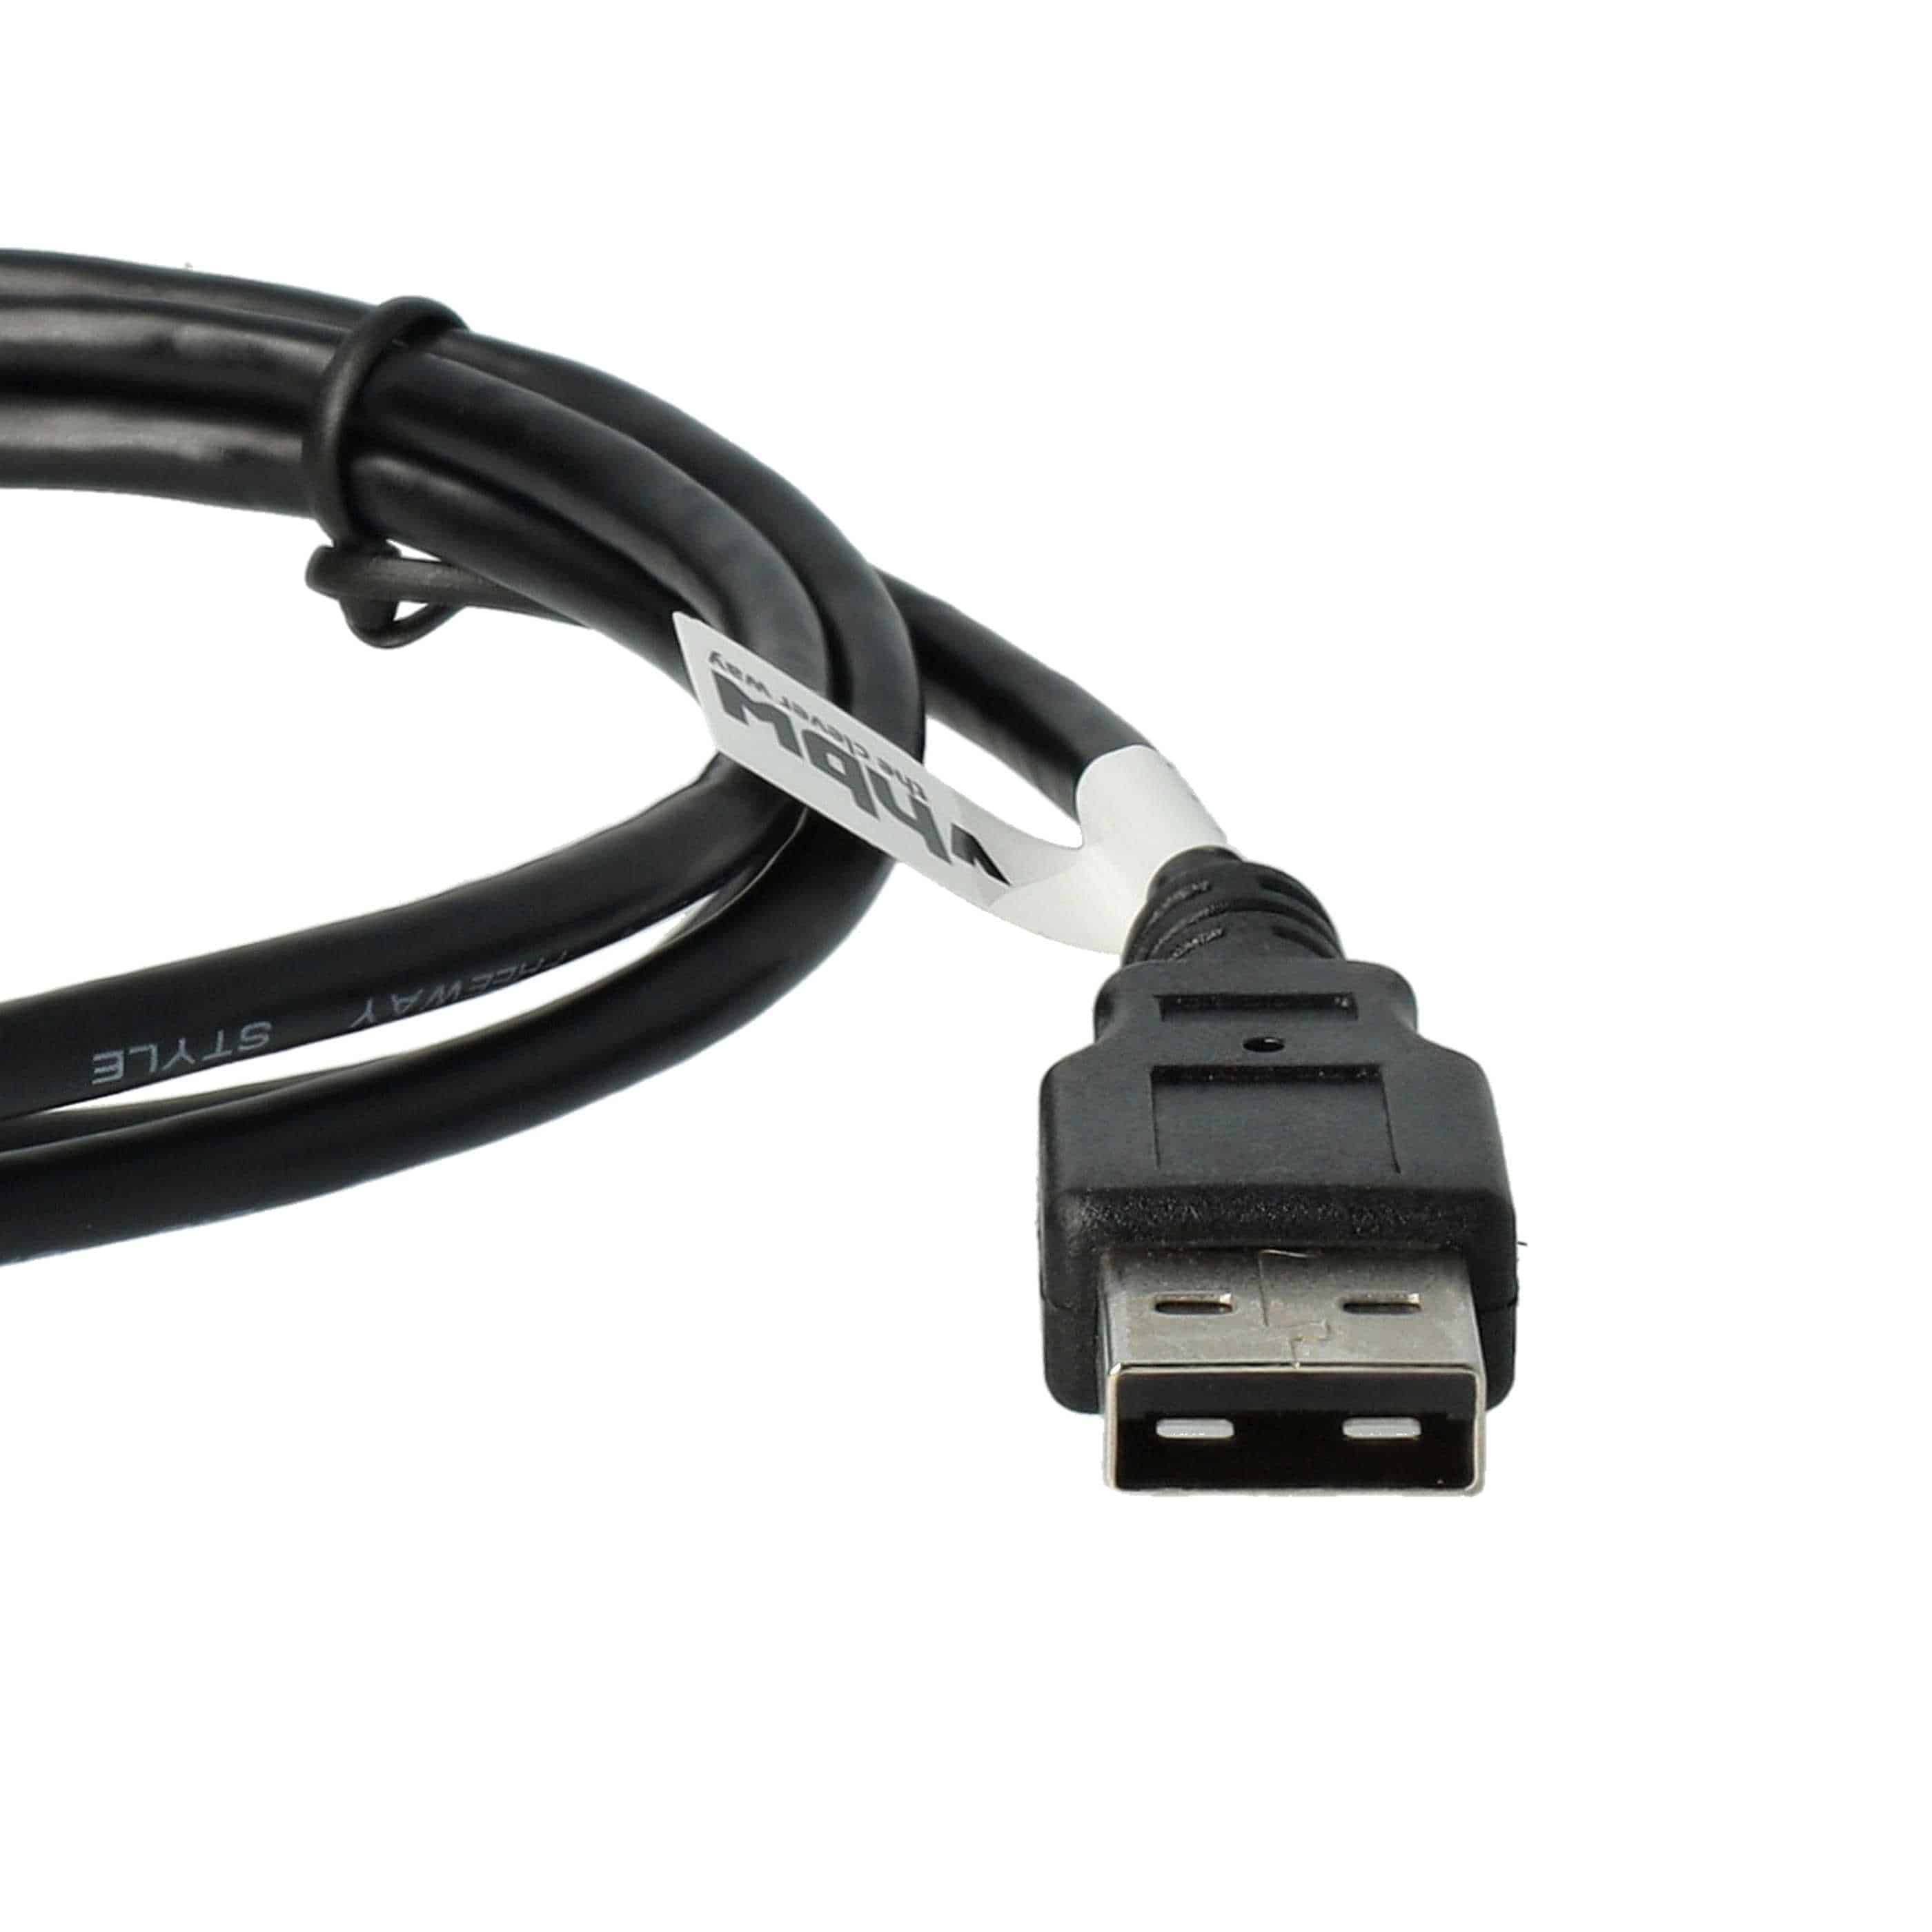 USB Datenkabel Ladekabel passend für Archos 404 u.a., 100 cm